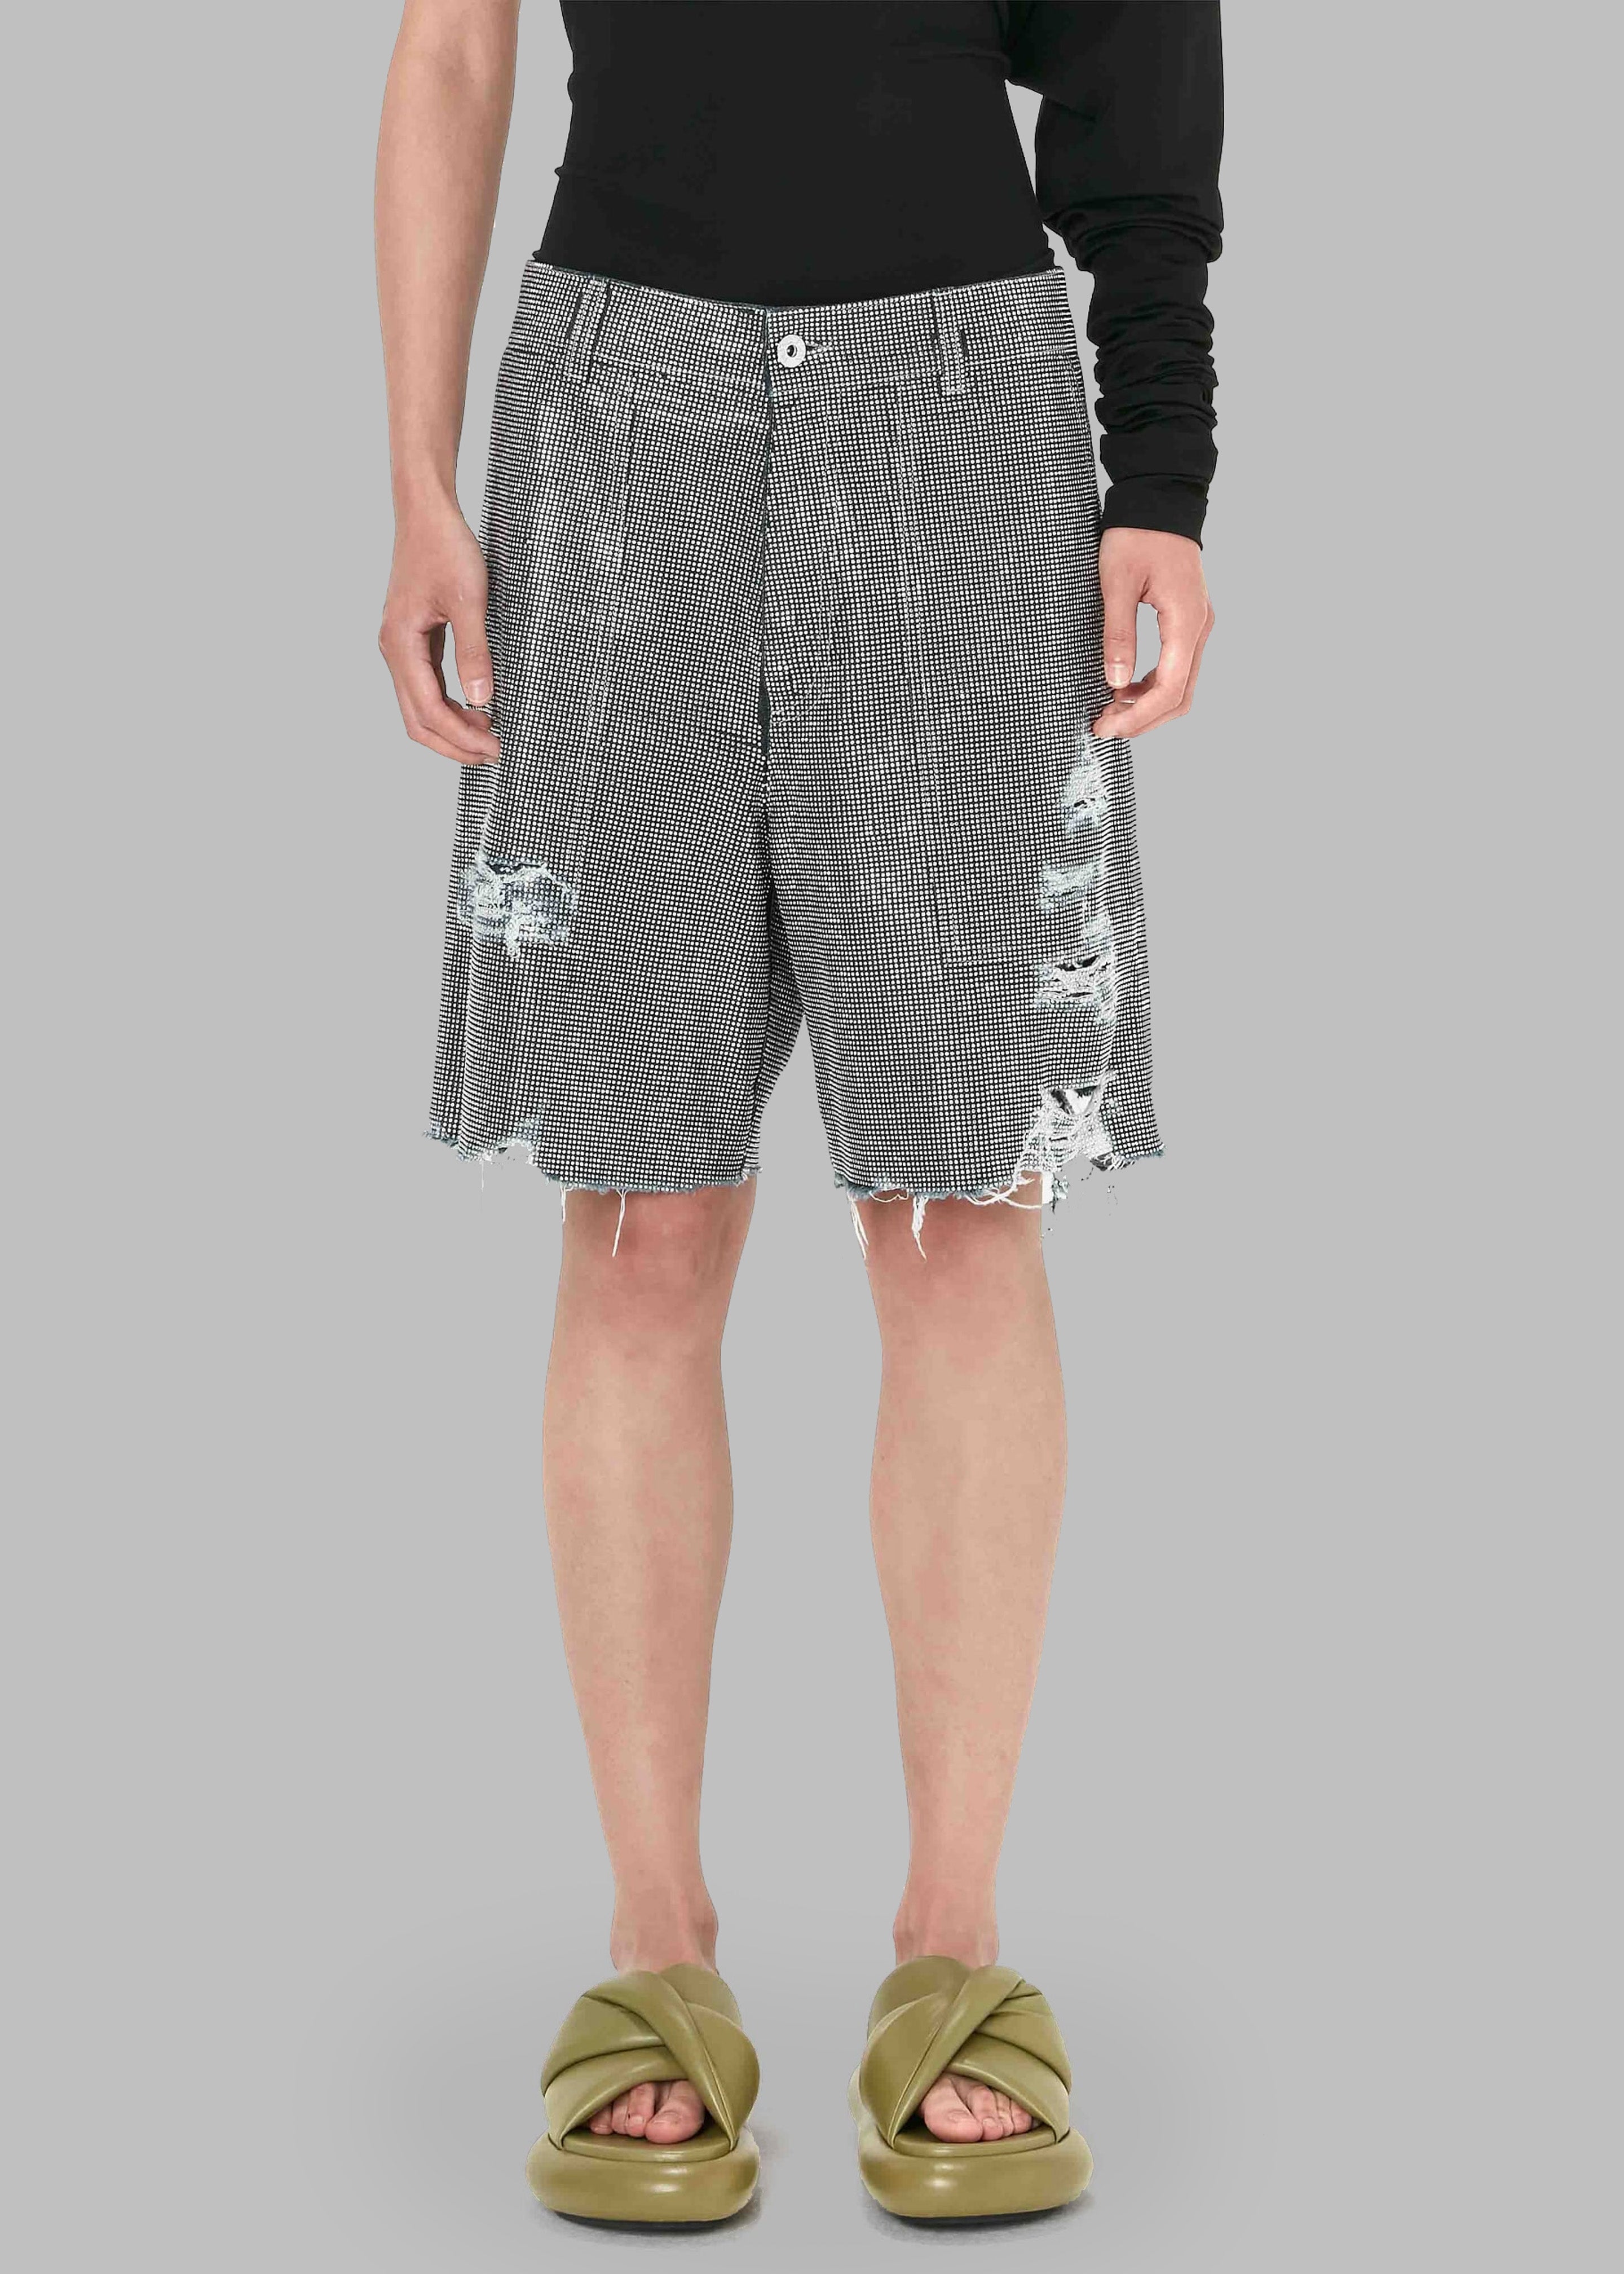 JW Anderson Studded Workwear Shorts - Indigo/Silver - 10